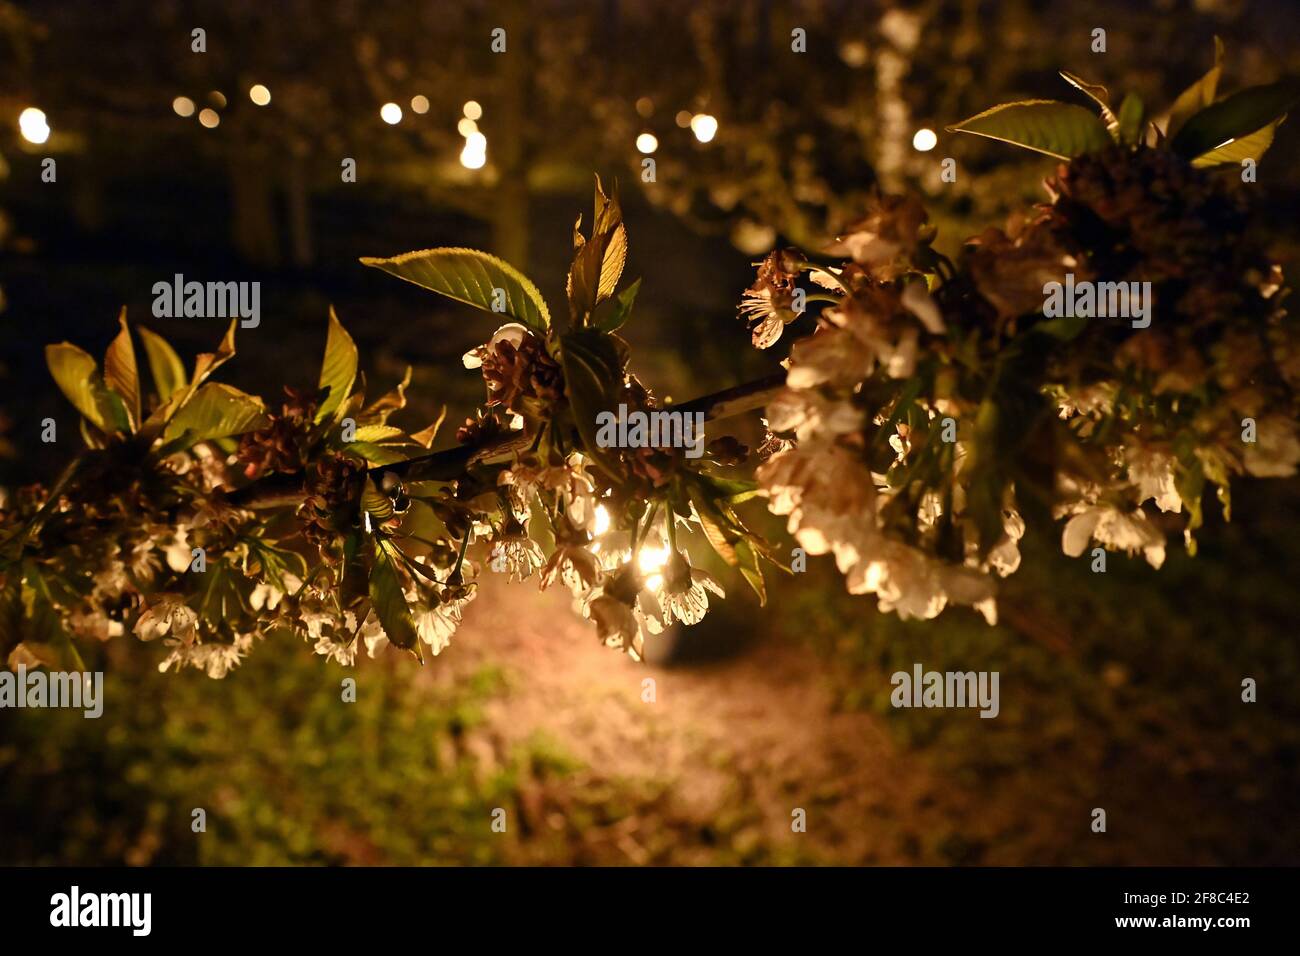 La ilustración muestra algunas velas especiales para calentar los árboles frutales, aquí los cerezos, como las temperaturas bajan por debajo de cero degress en la noche an Foto de stock